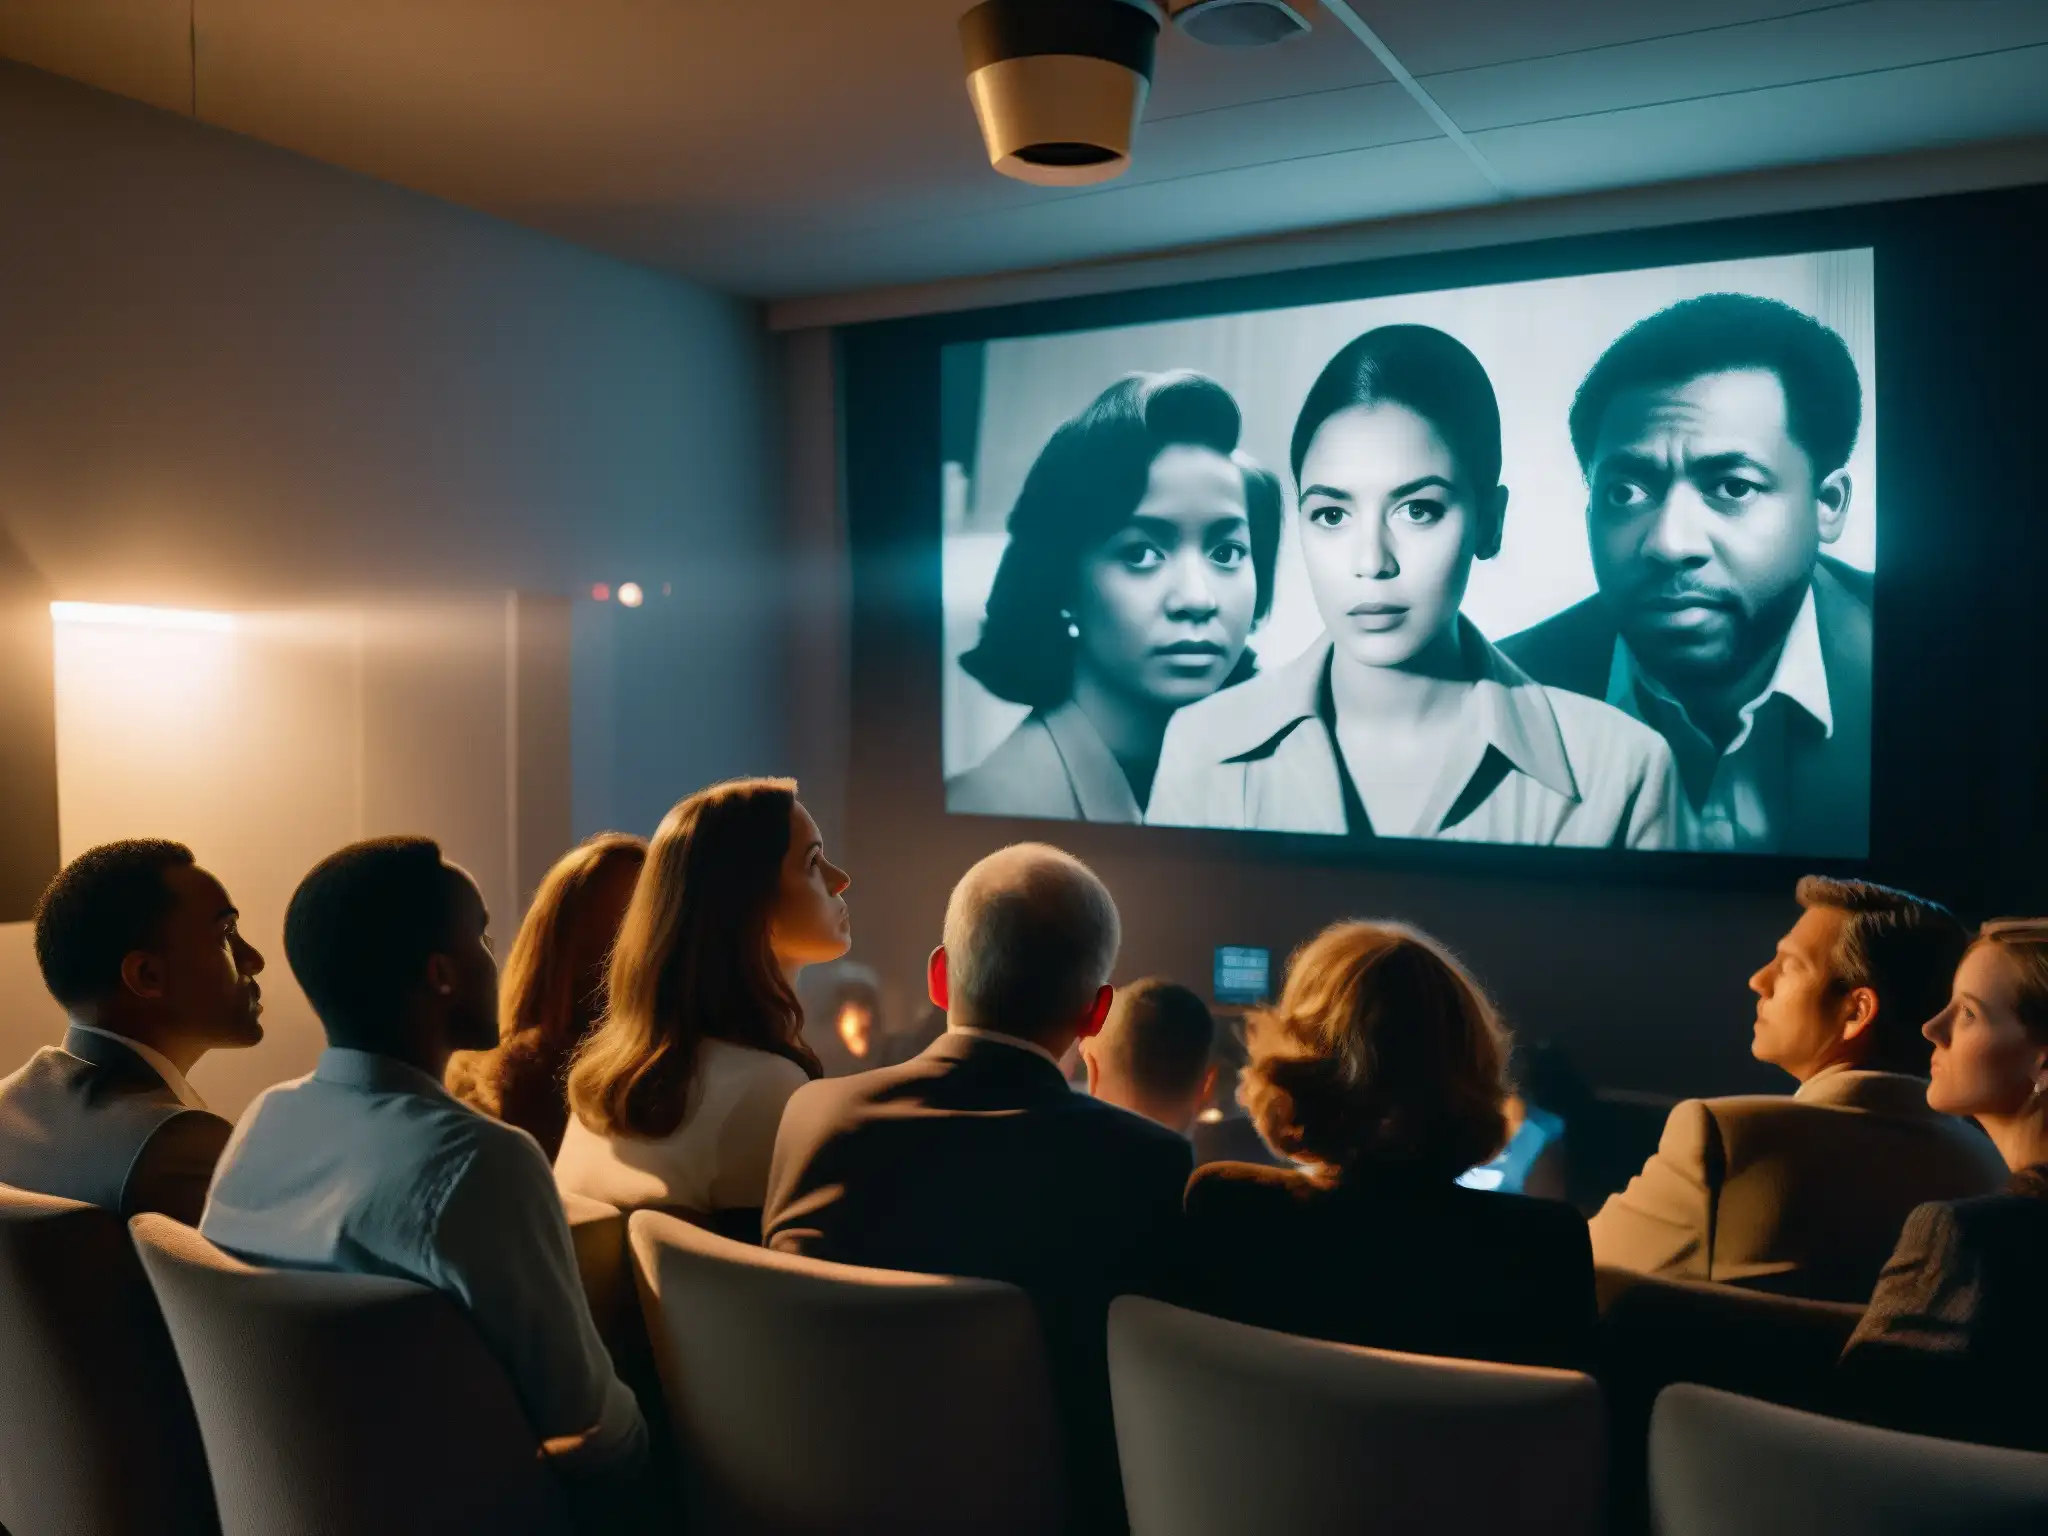 Un grupo de personas ve una película en blanco y negro en una habitación tenue, creando una atmósfera misteriosa y llena de expectación mientras observan un póster político desgastado en la pared